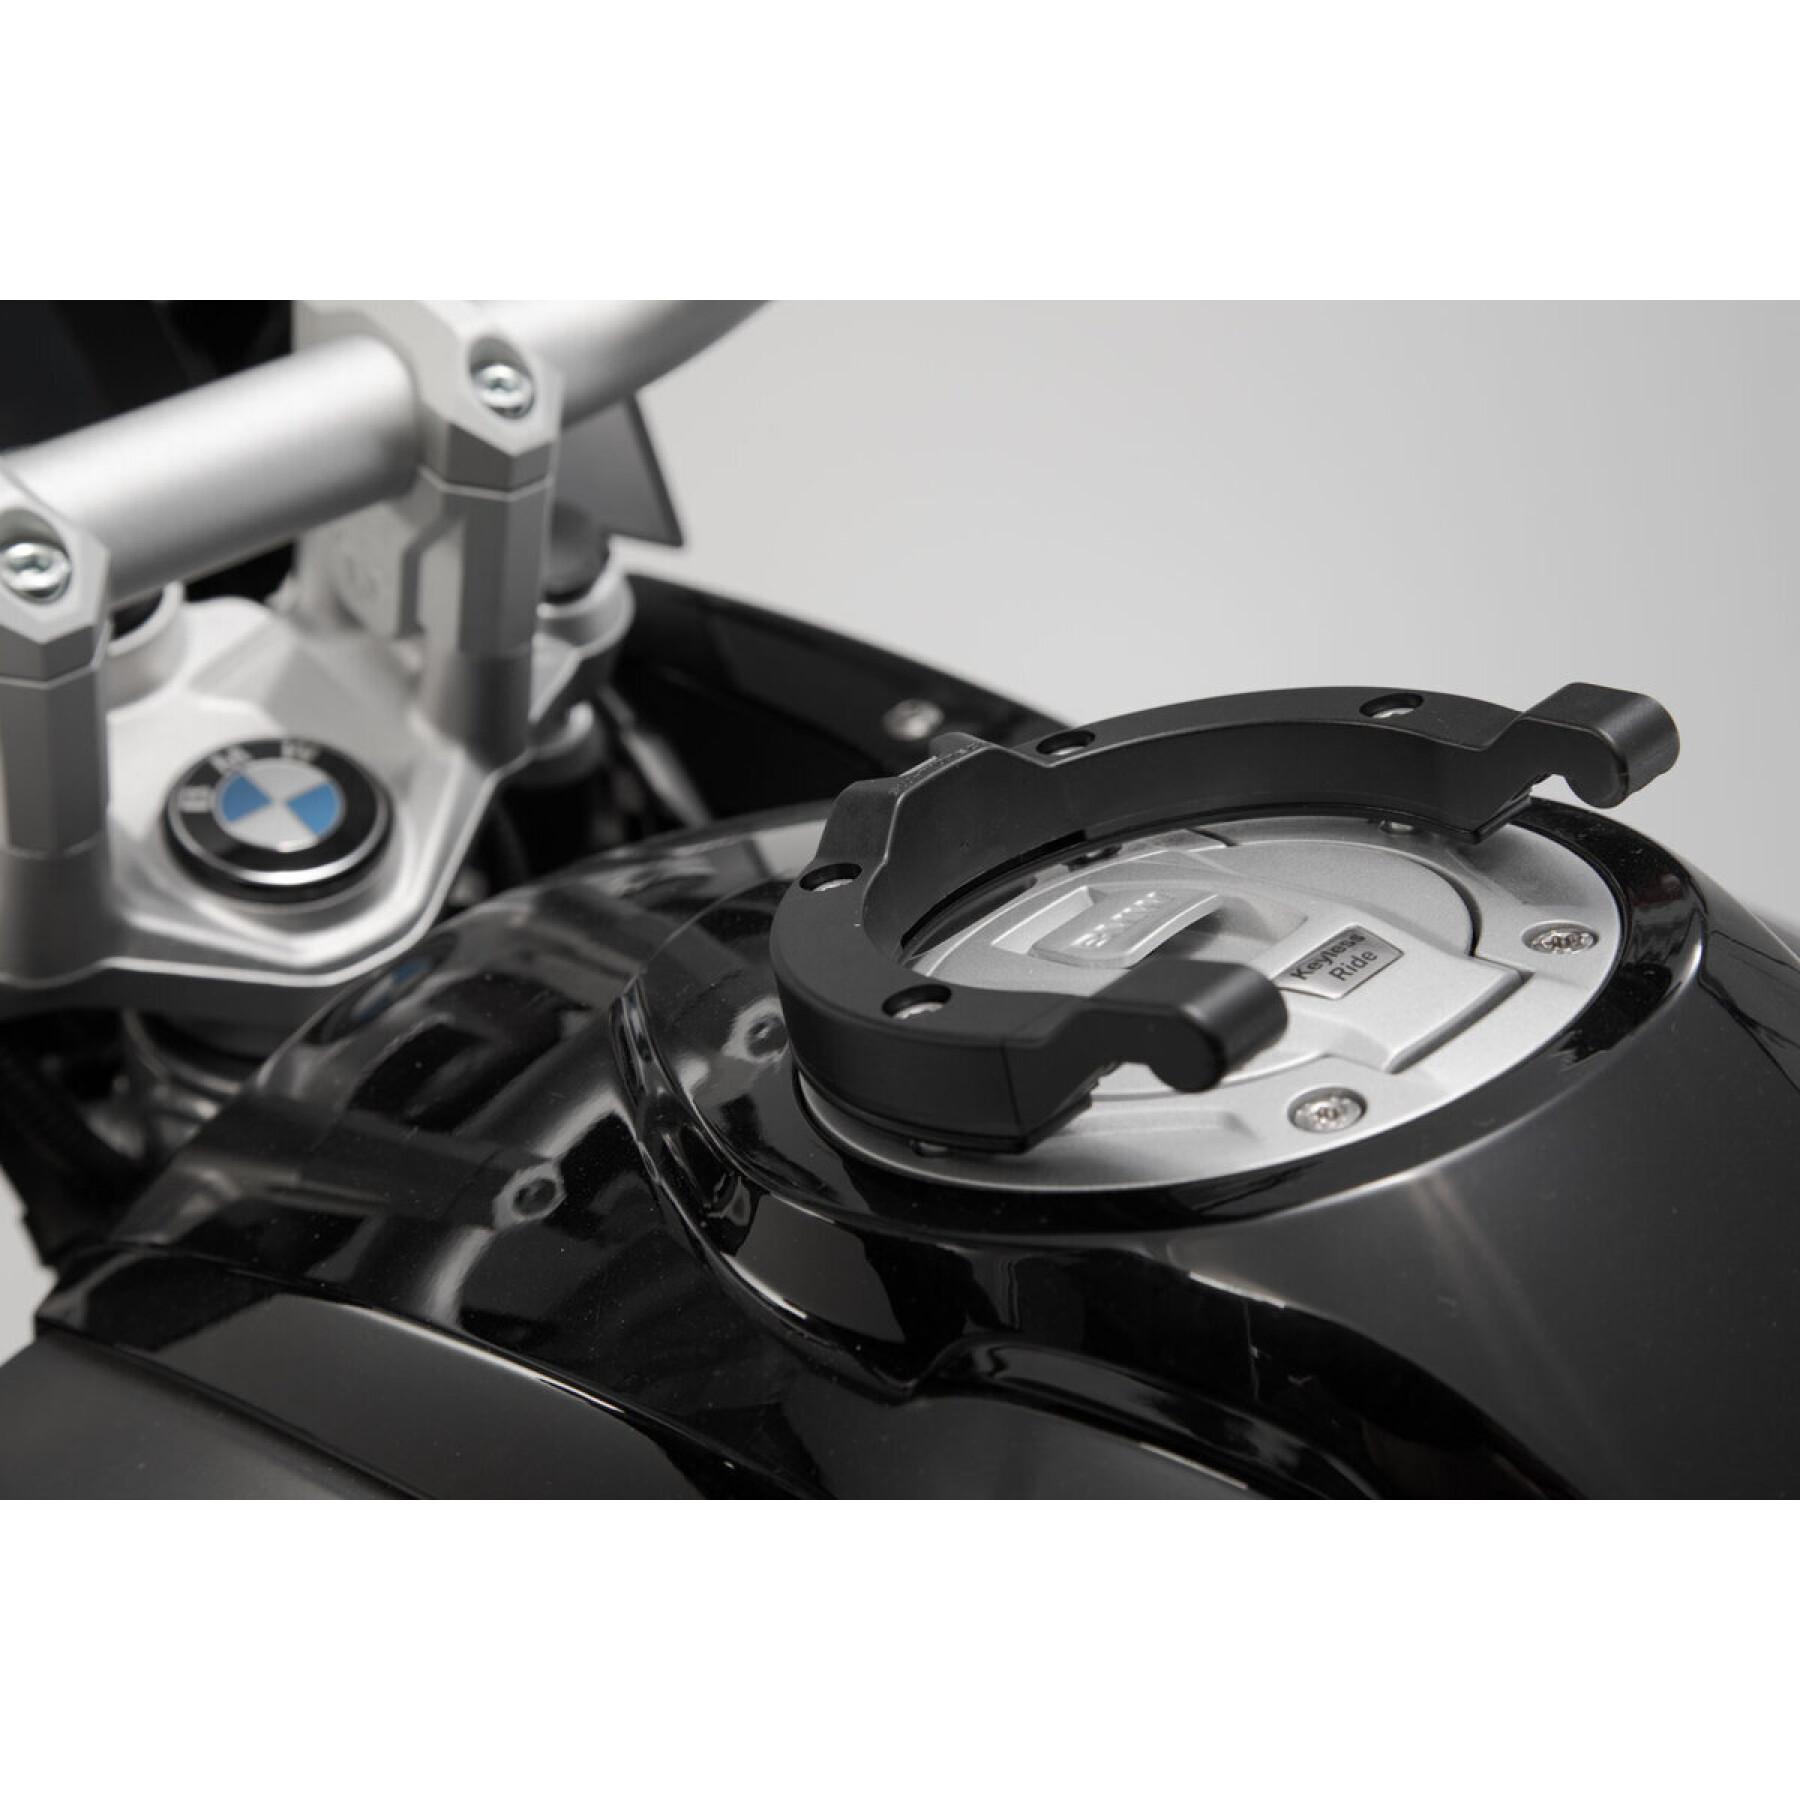 Anneau de réservoir SW-Motech Ion BMW / Ducati / KTM / Triumph